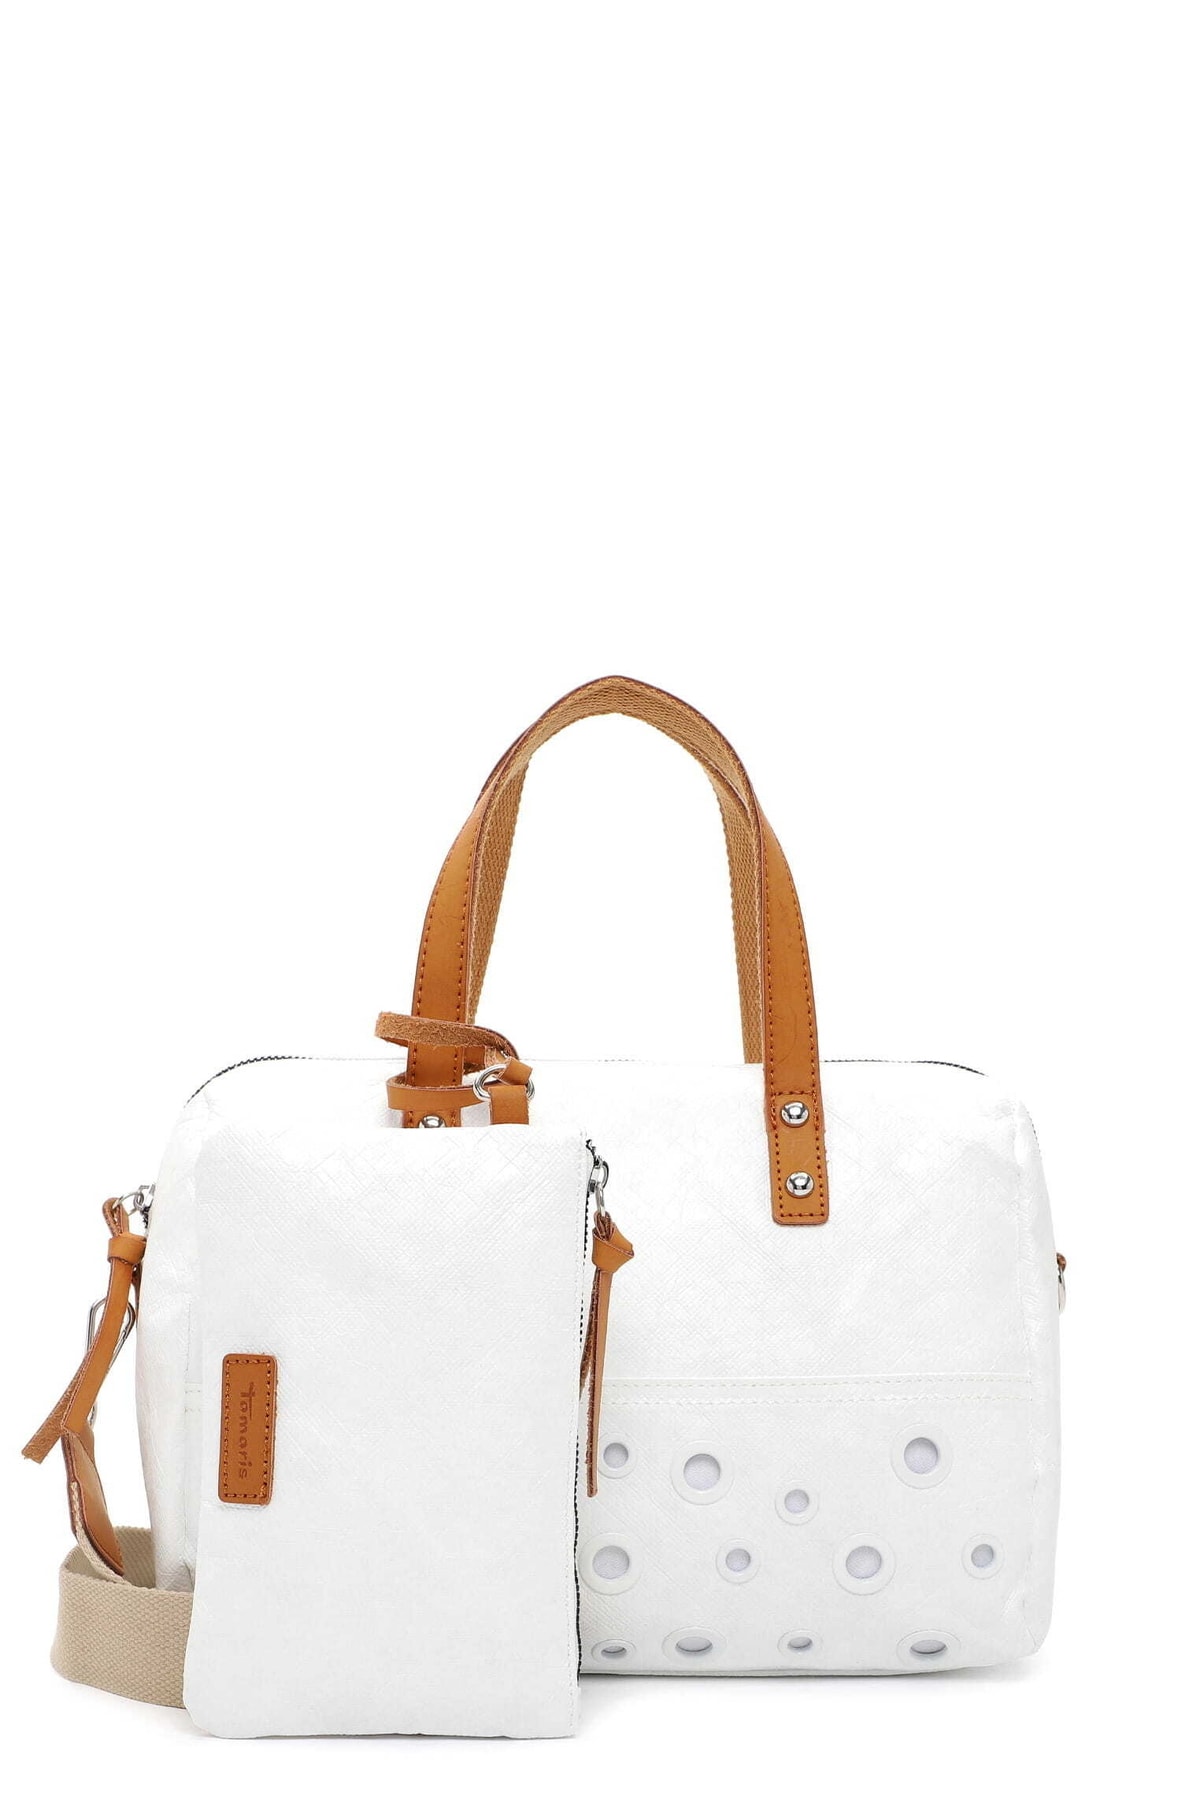 Tamaris Handtasche Weiß Geometrisches Muster